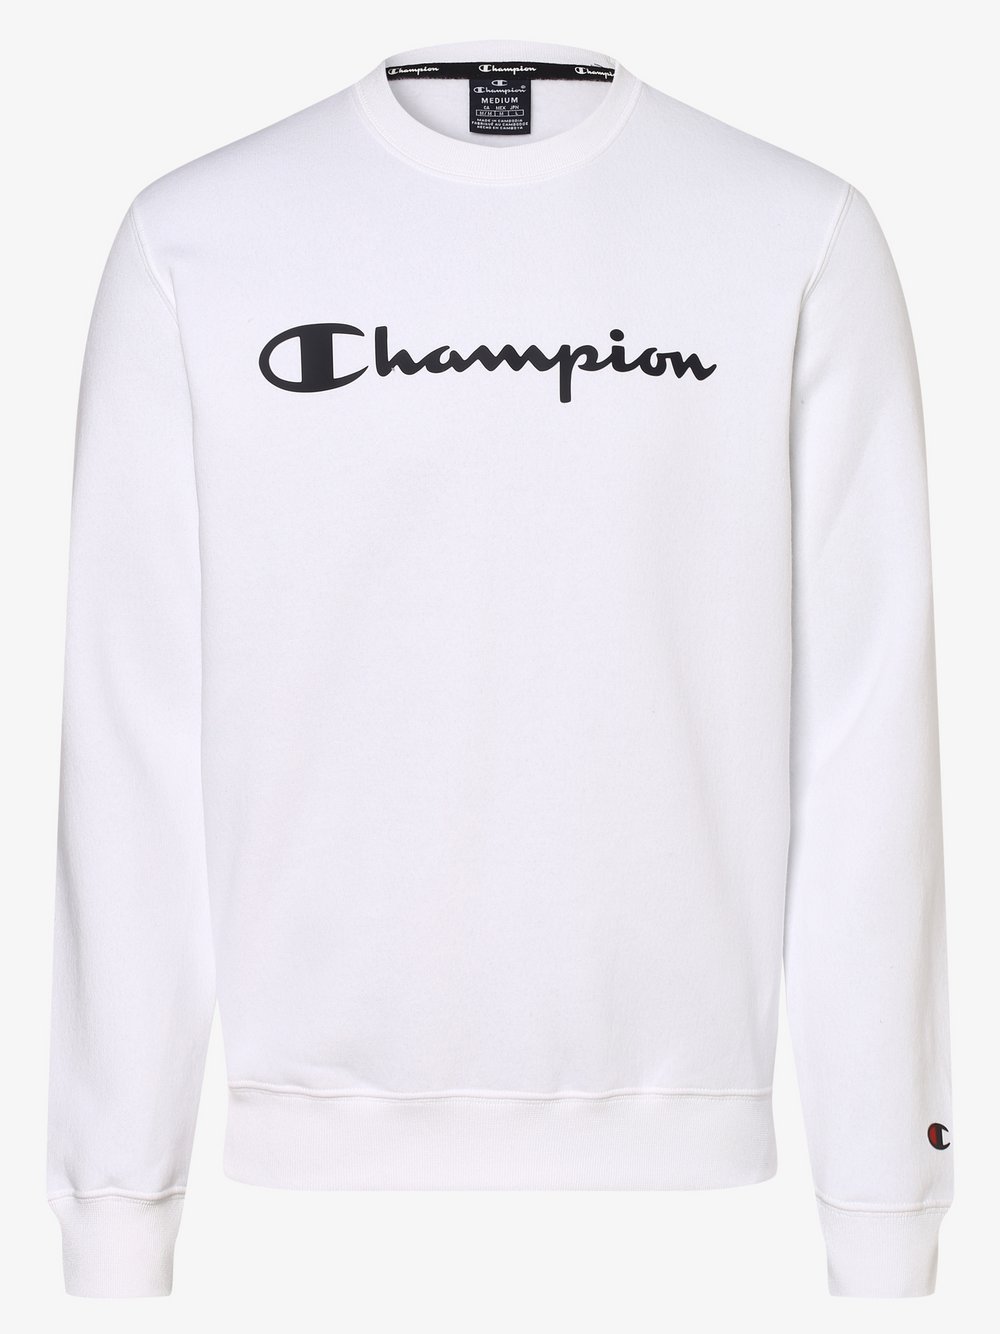 Champion - Męska bluza nierozpinana, biały